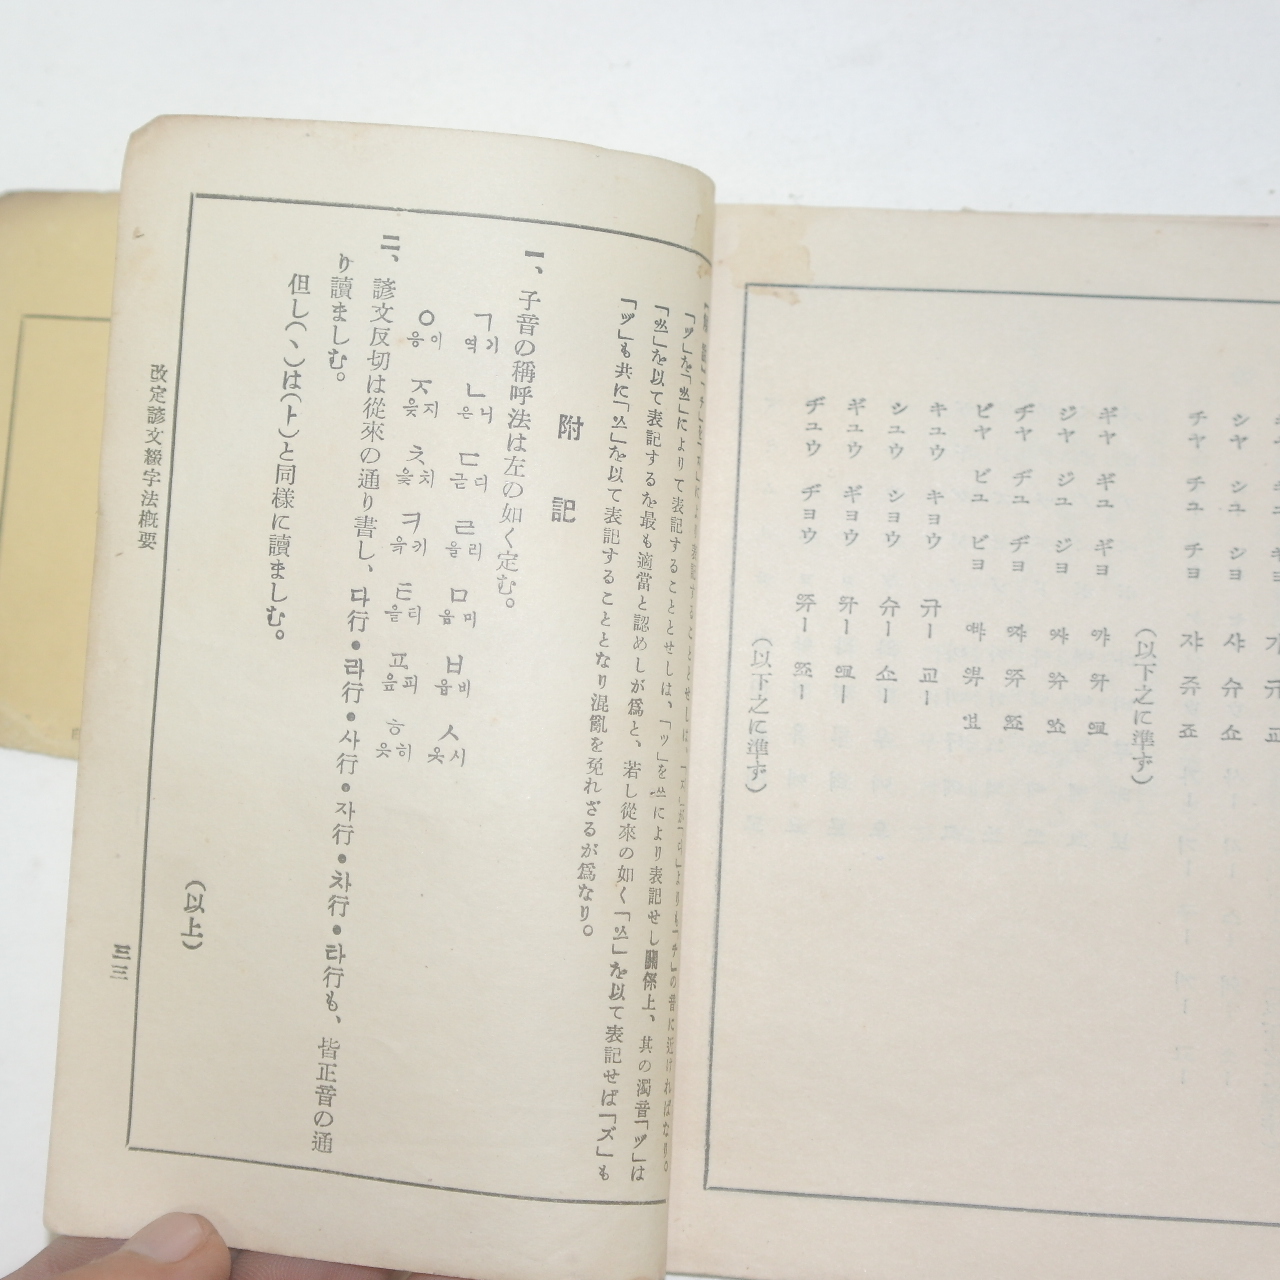 1935년 경성조선어연구회발행 개정언문철자법개요(改定諺文綴字法槪要)